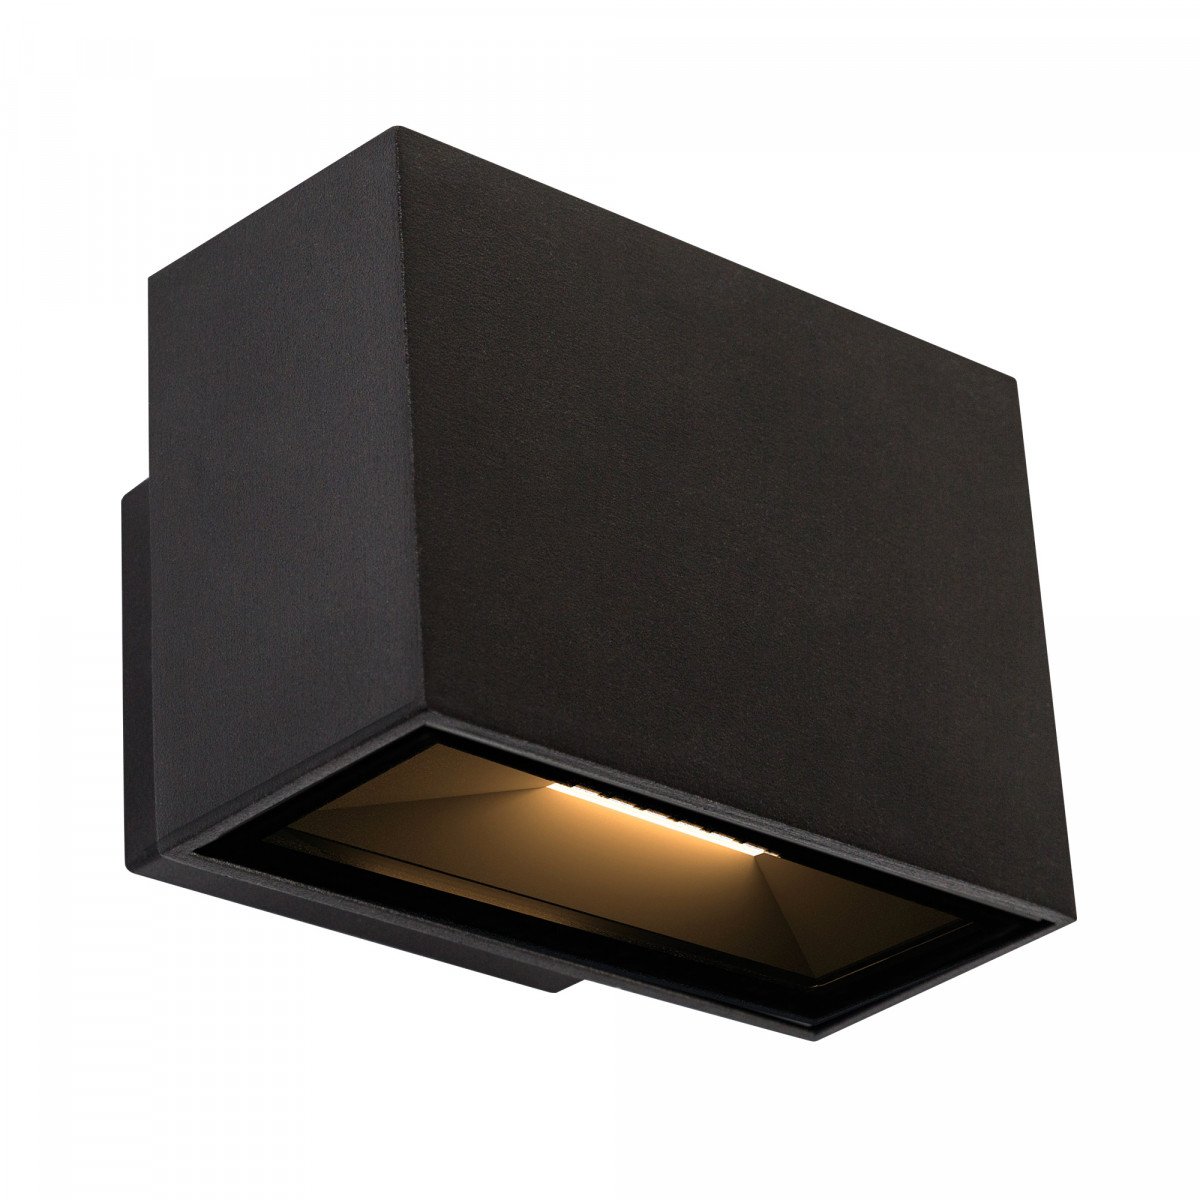 LED Gevelspot Segment Small een prachtige compacte stijlvolle aluminium LED wandspot met zwarte finish, weerbestendig en duurzame buitenverlichting van KS Verlichting